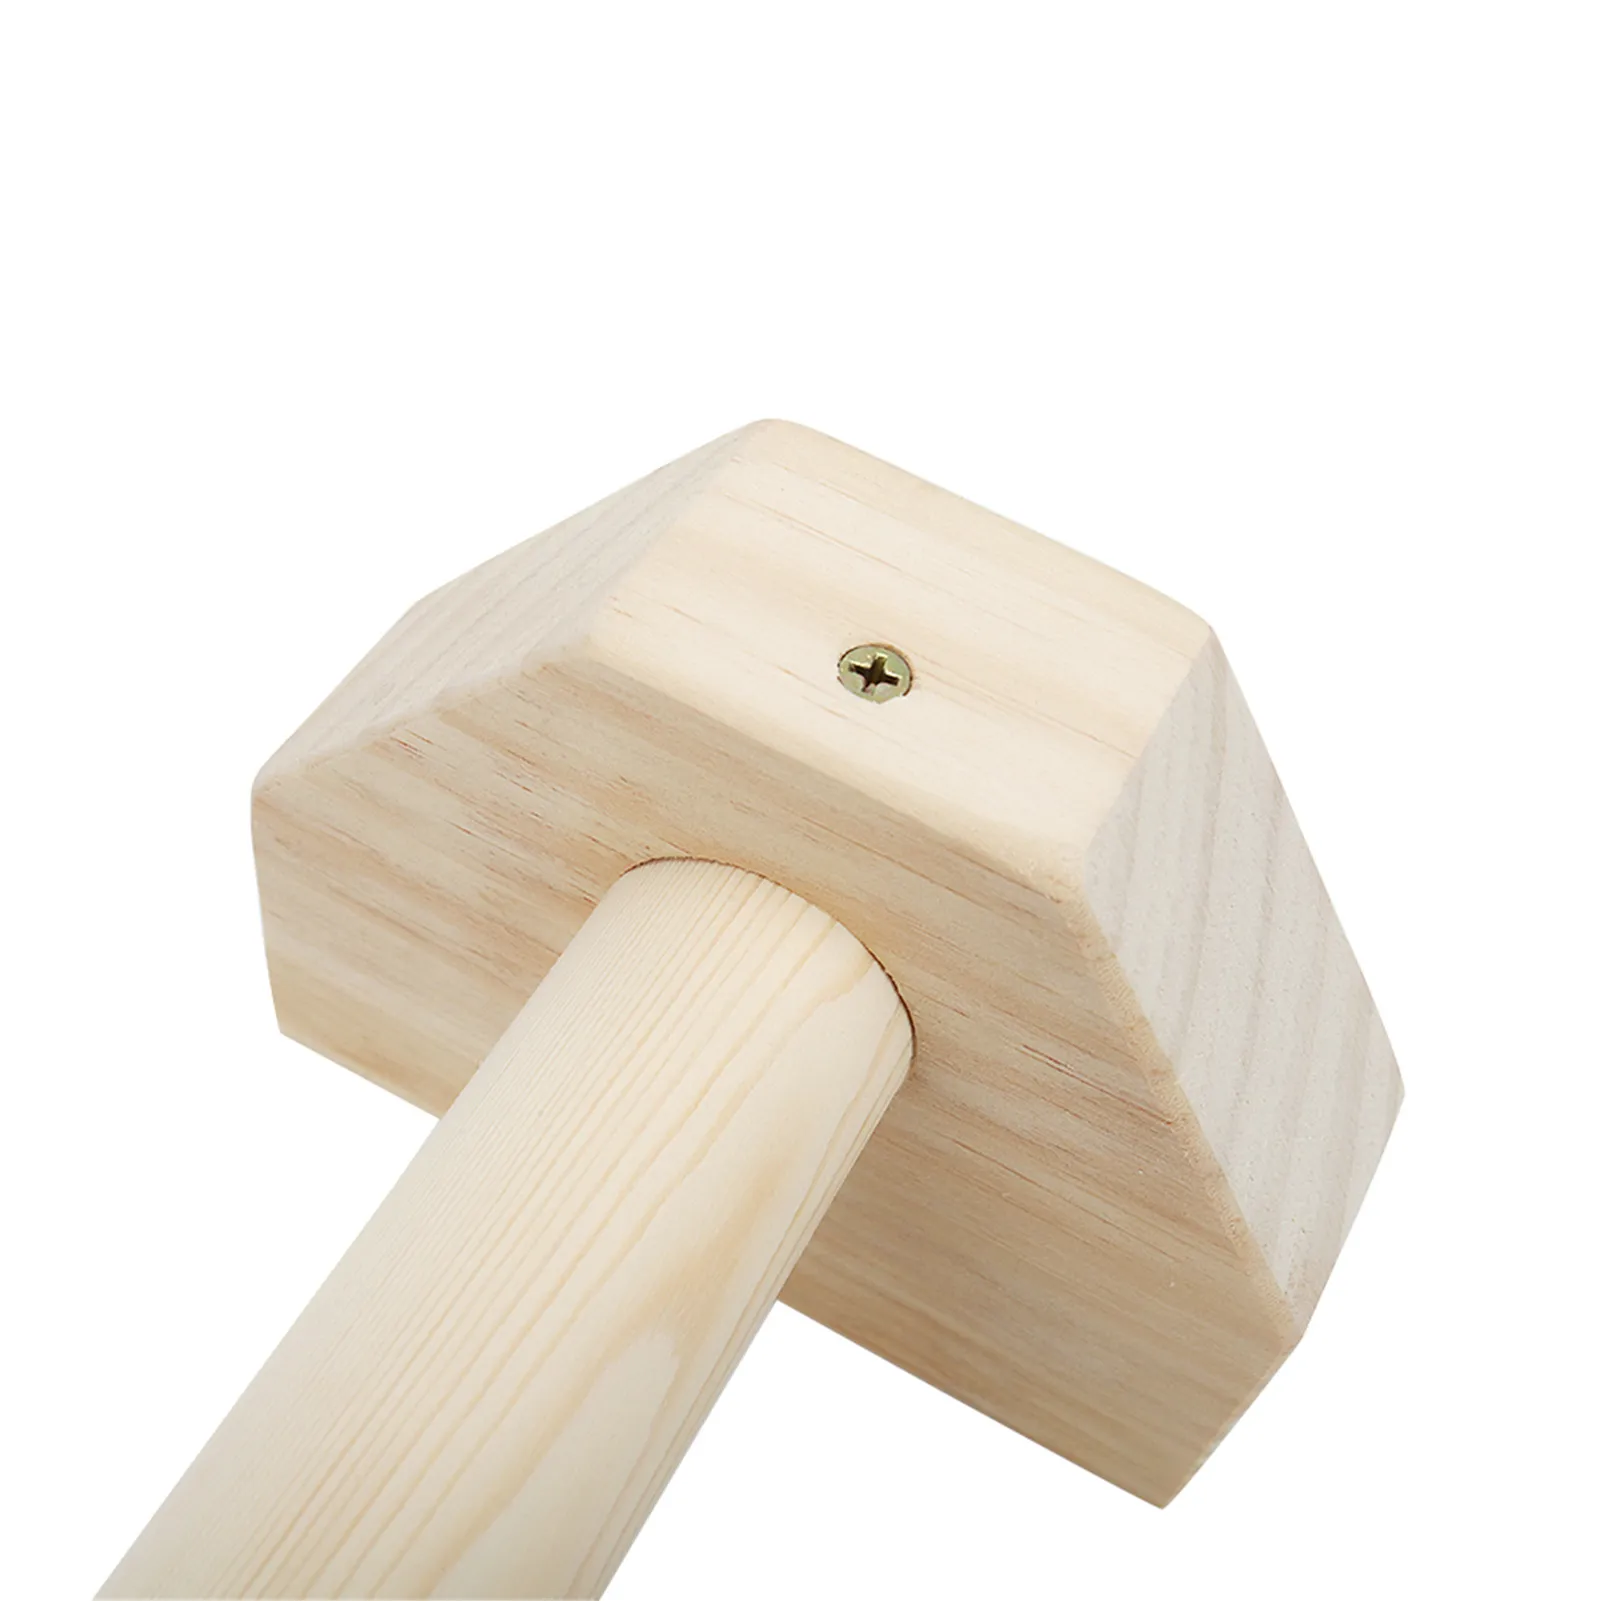 H على شكل خشب بيئي الخشب الخشبي يدوي الدقة المخصصة للضغط المزدوج قضيب القضيب على السلع الرياضية